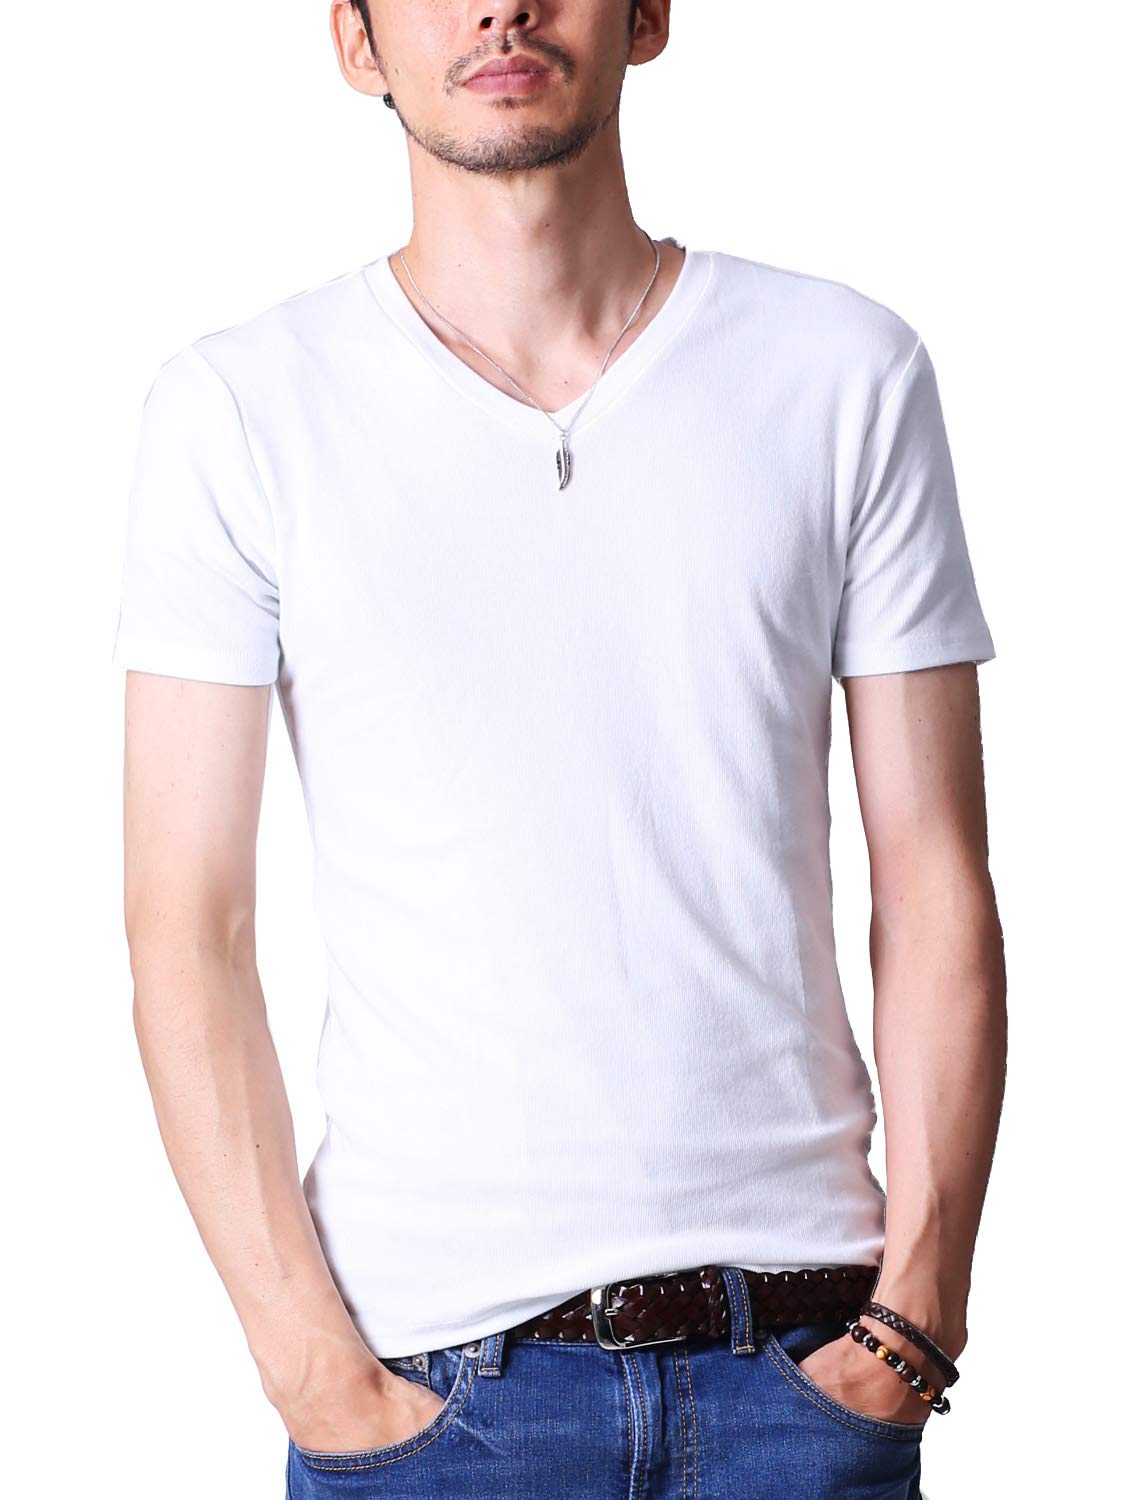 フテラ メンズ シャツ カットソー Tシャツ ロンＴクルーネック 丸首 Vネック 長袖 7分袖 半袖 無地 シンプル スリム ホワイト(半袖/Vネッ